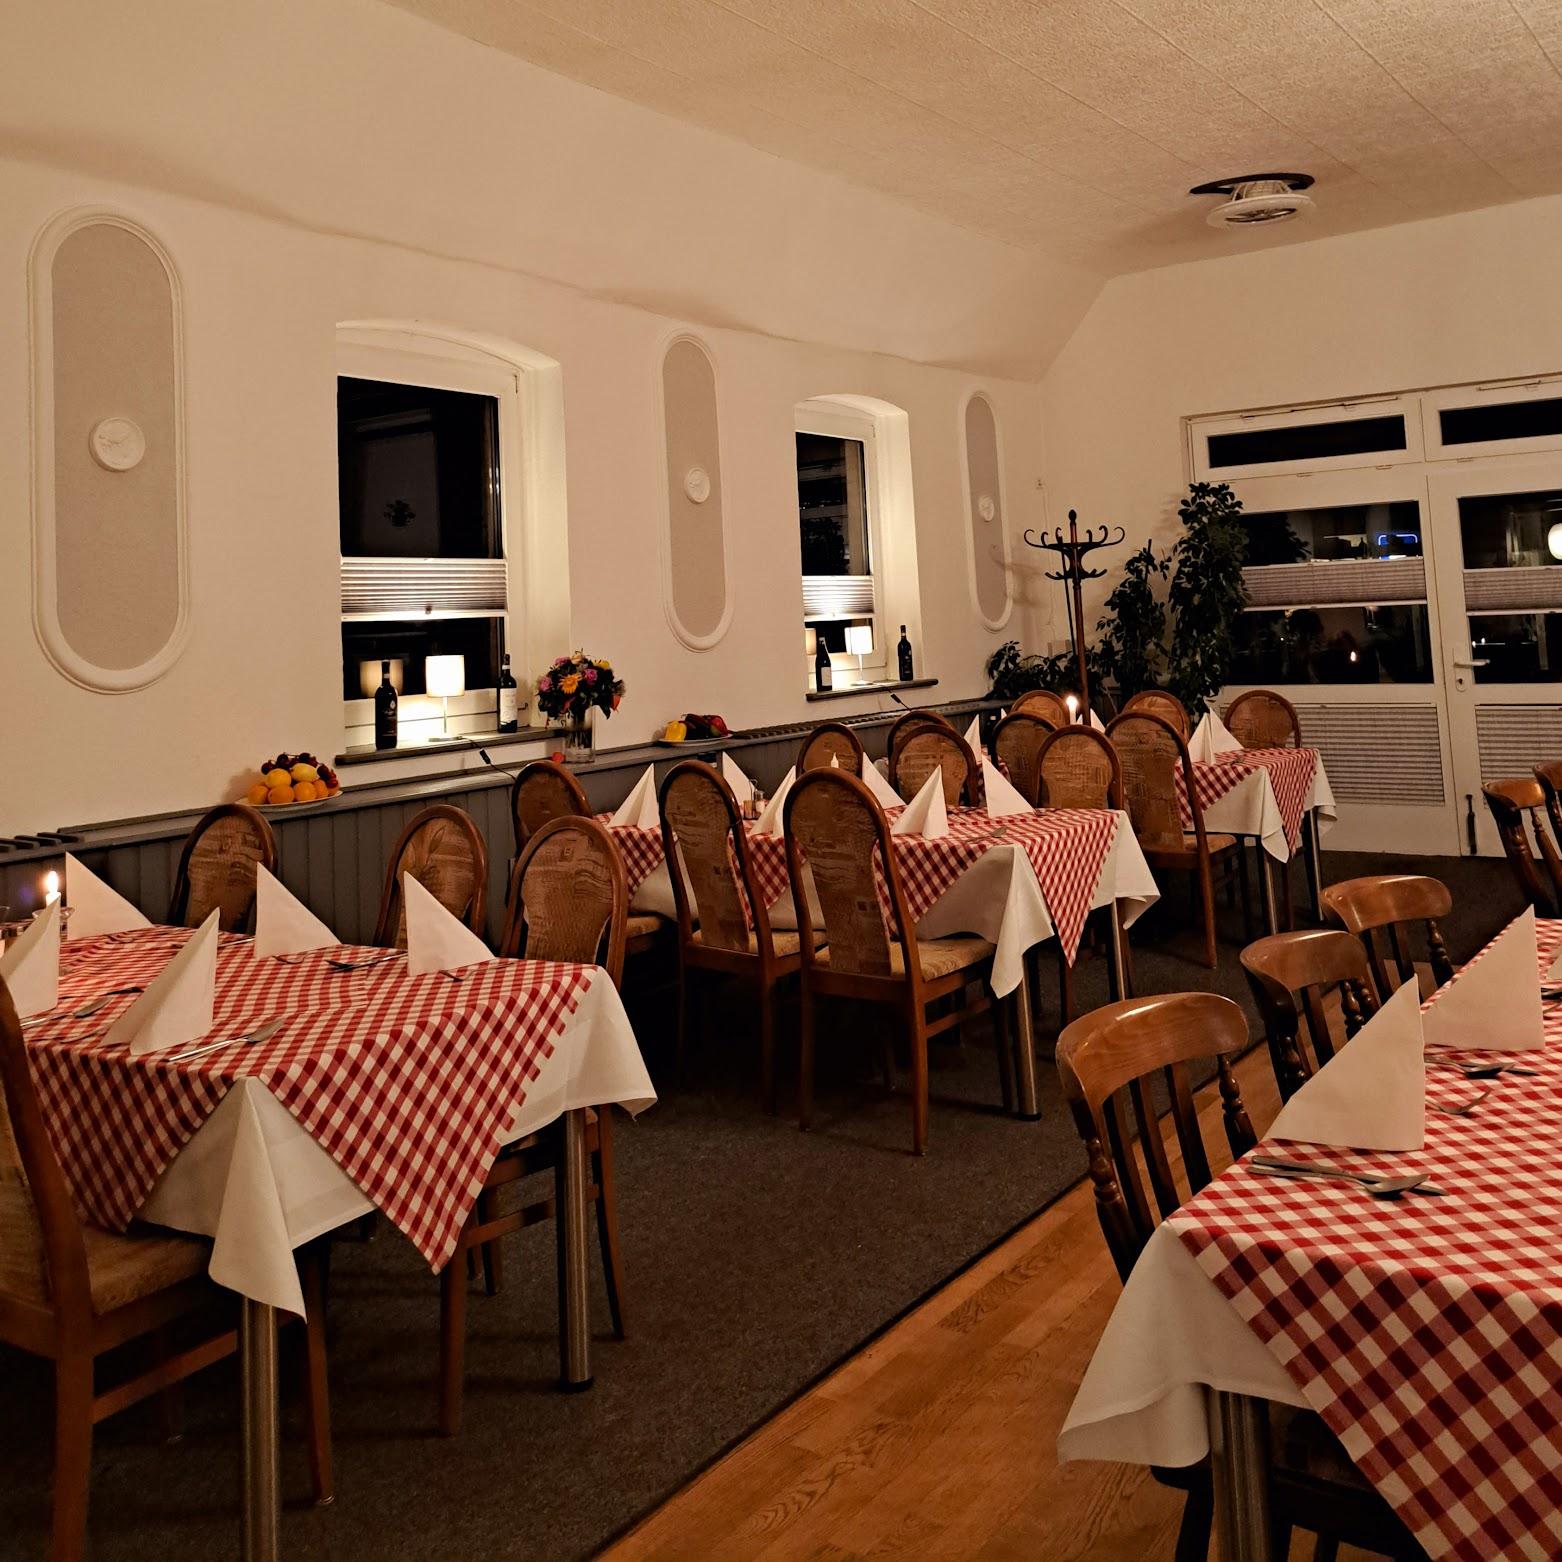 Restaurant "Trattoria Siena" in Mirow